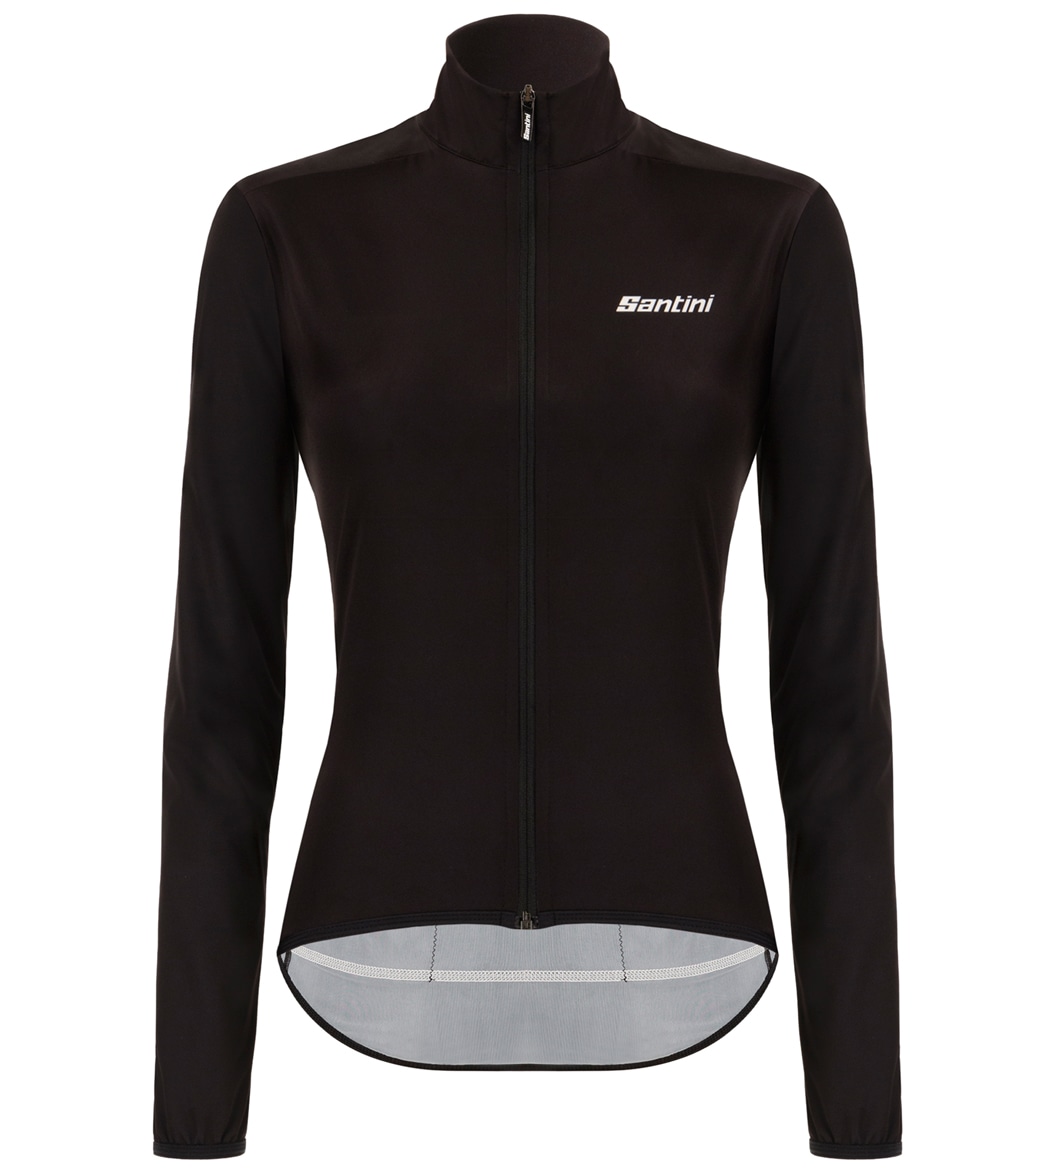 Santini Women's Nebula Puro Windbreaker Jacket - Black Large Size Large Elastane/Polyamide - Swimoutlet.com